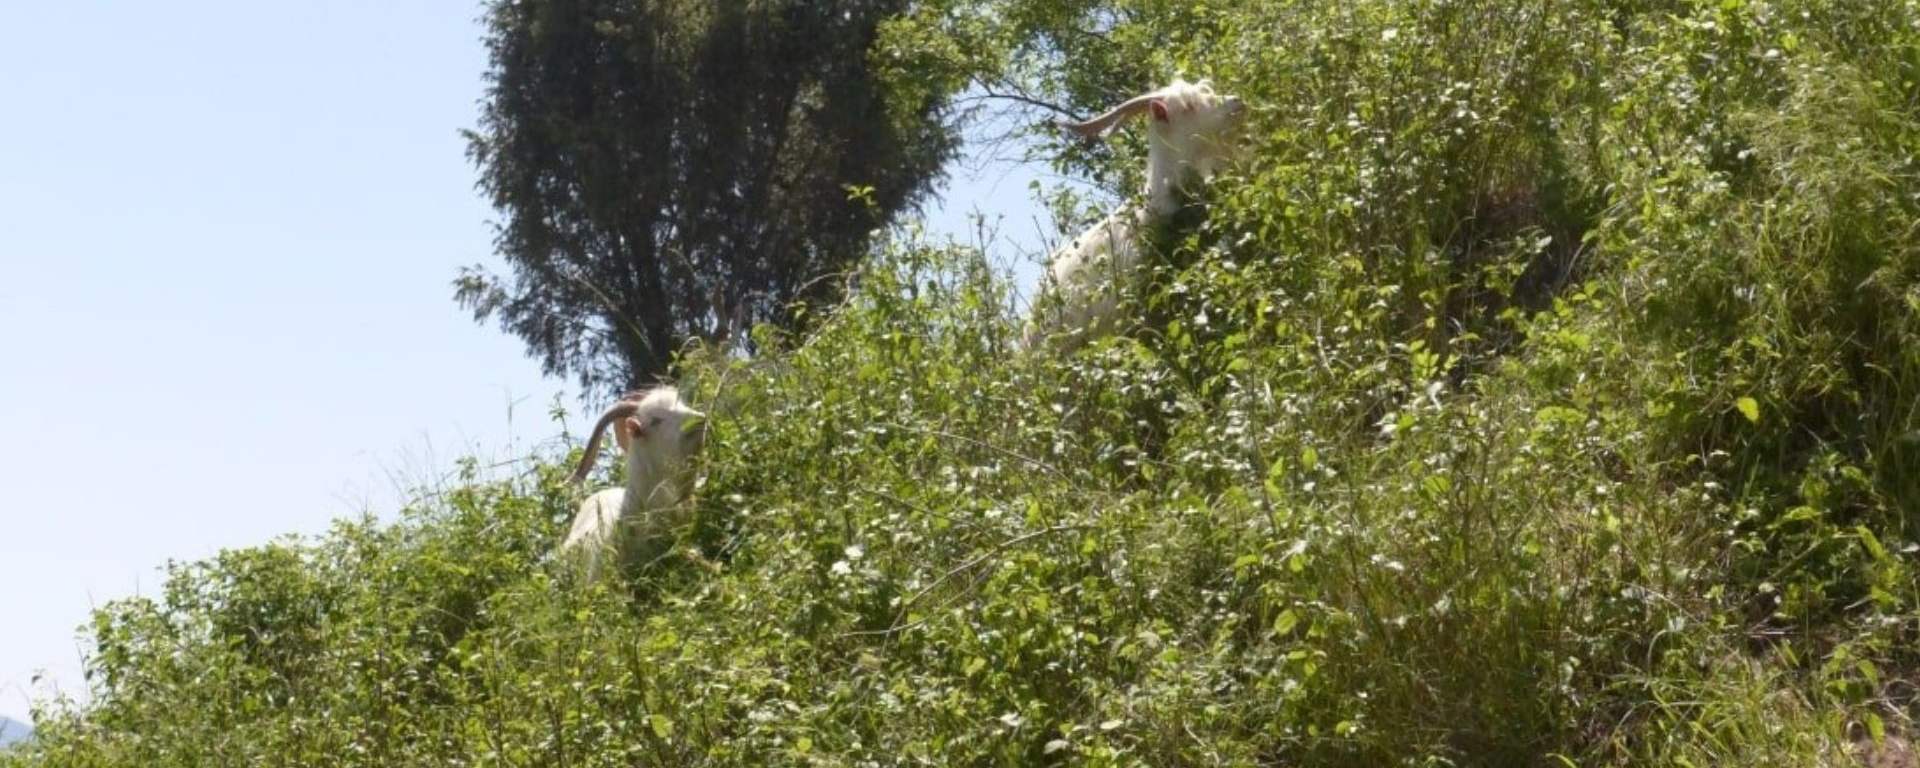 Kozy na wzgórzu zamkowym Czorsztyn